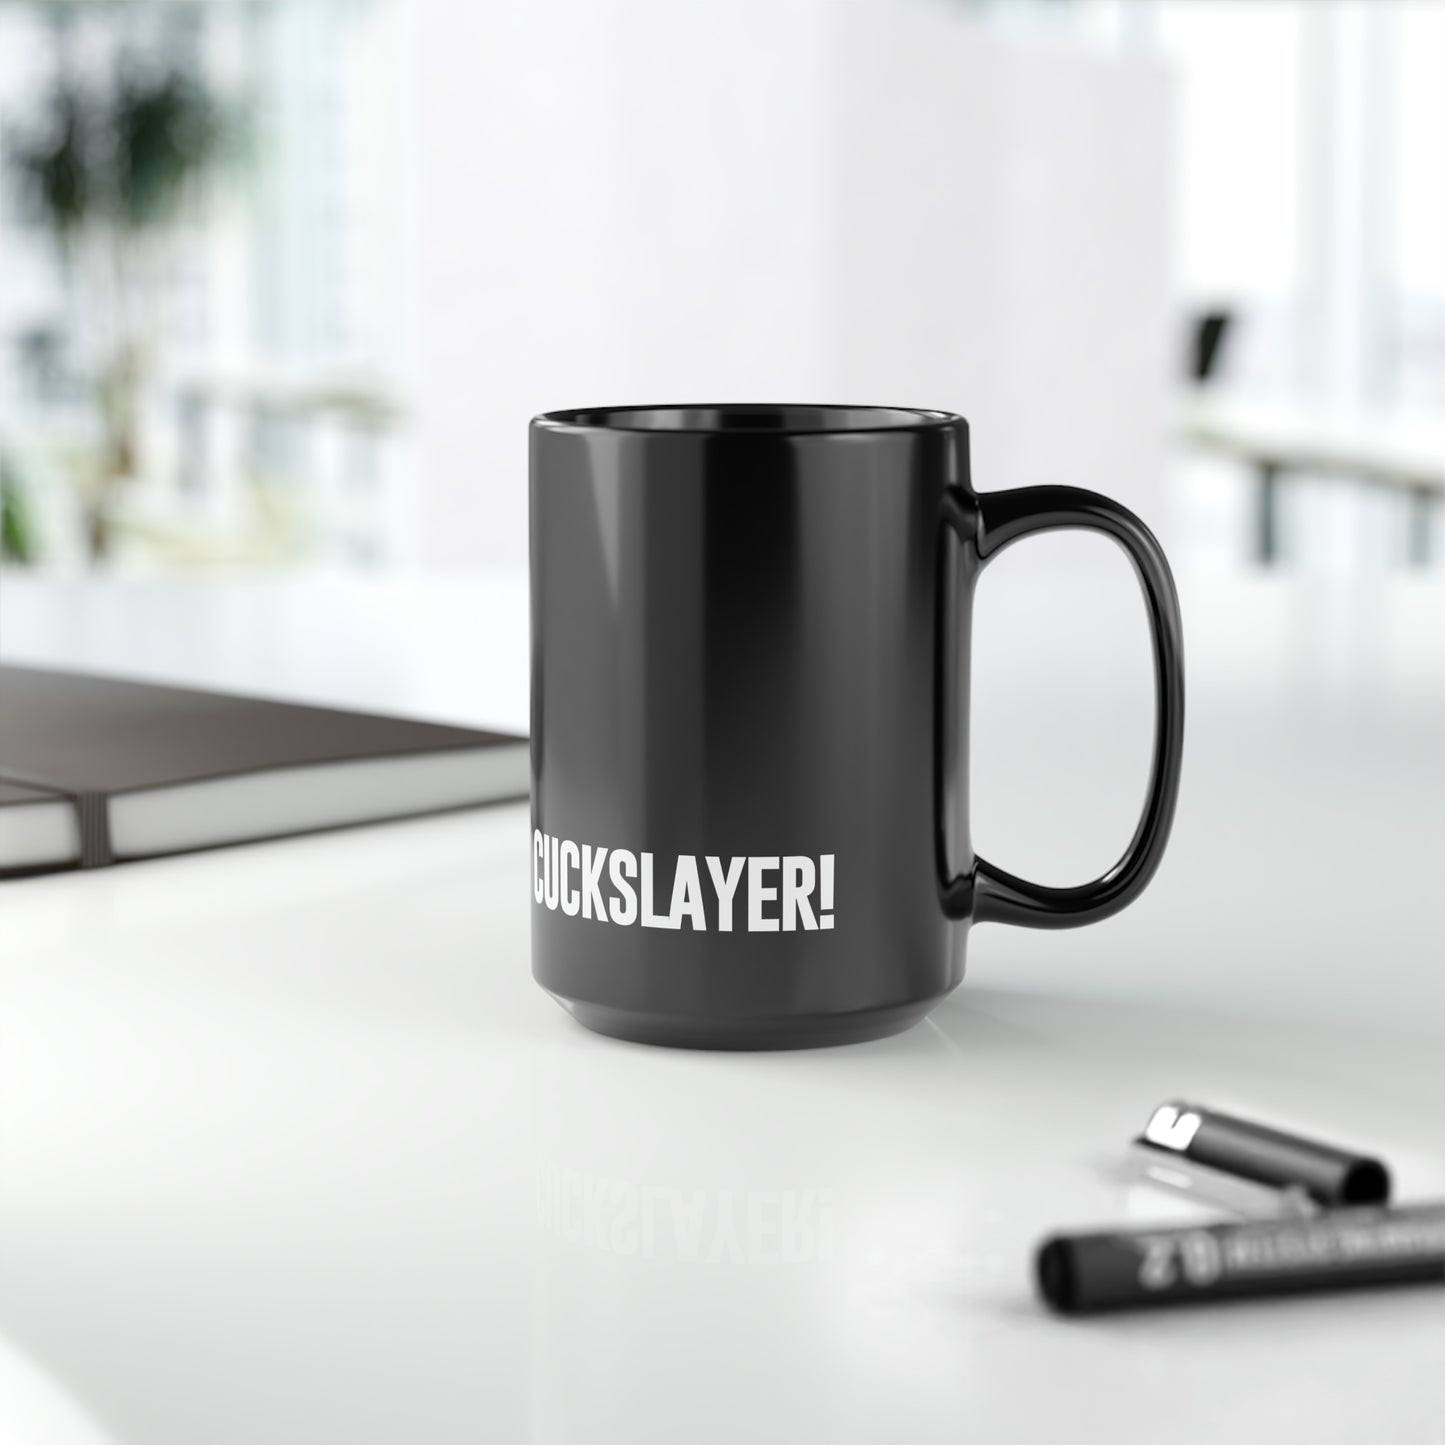 Cuckslayer Mug